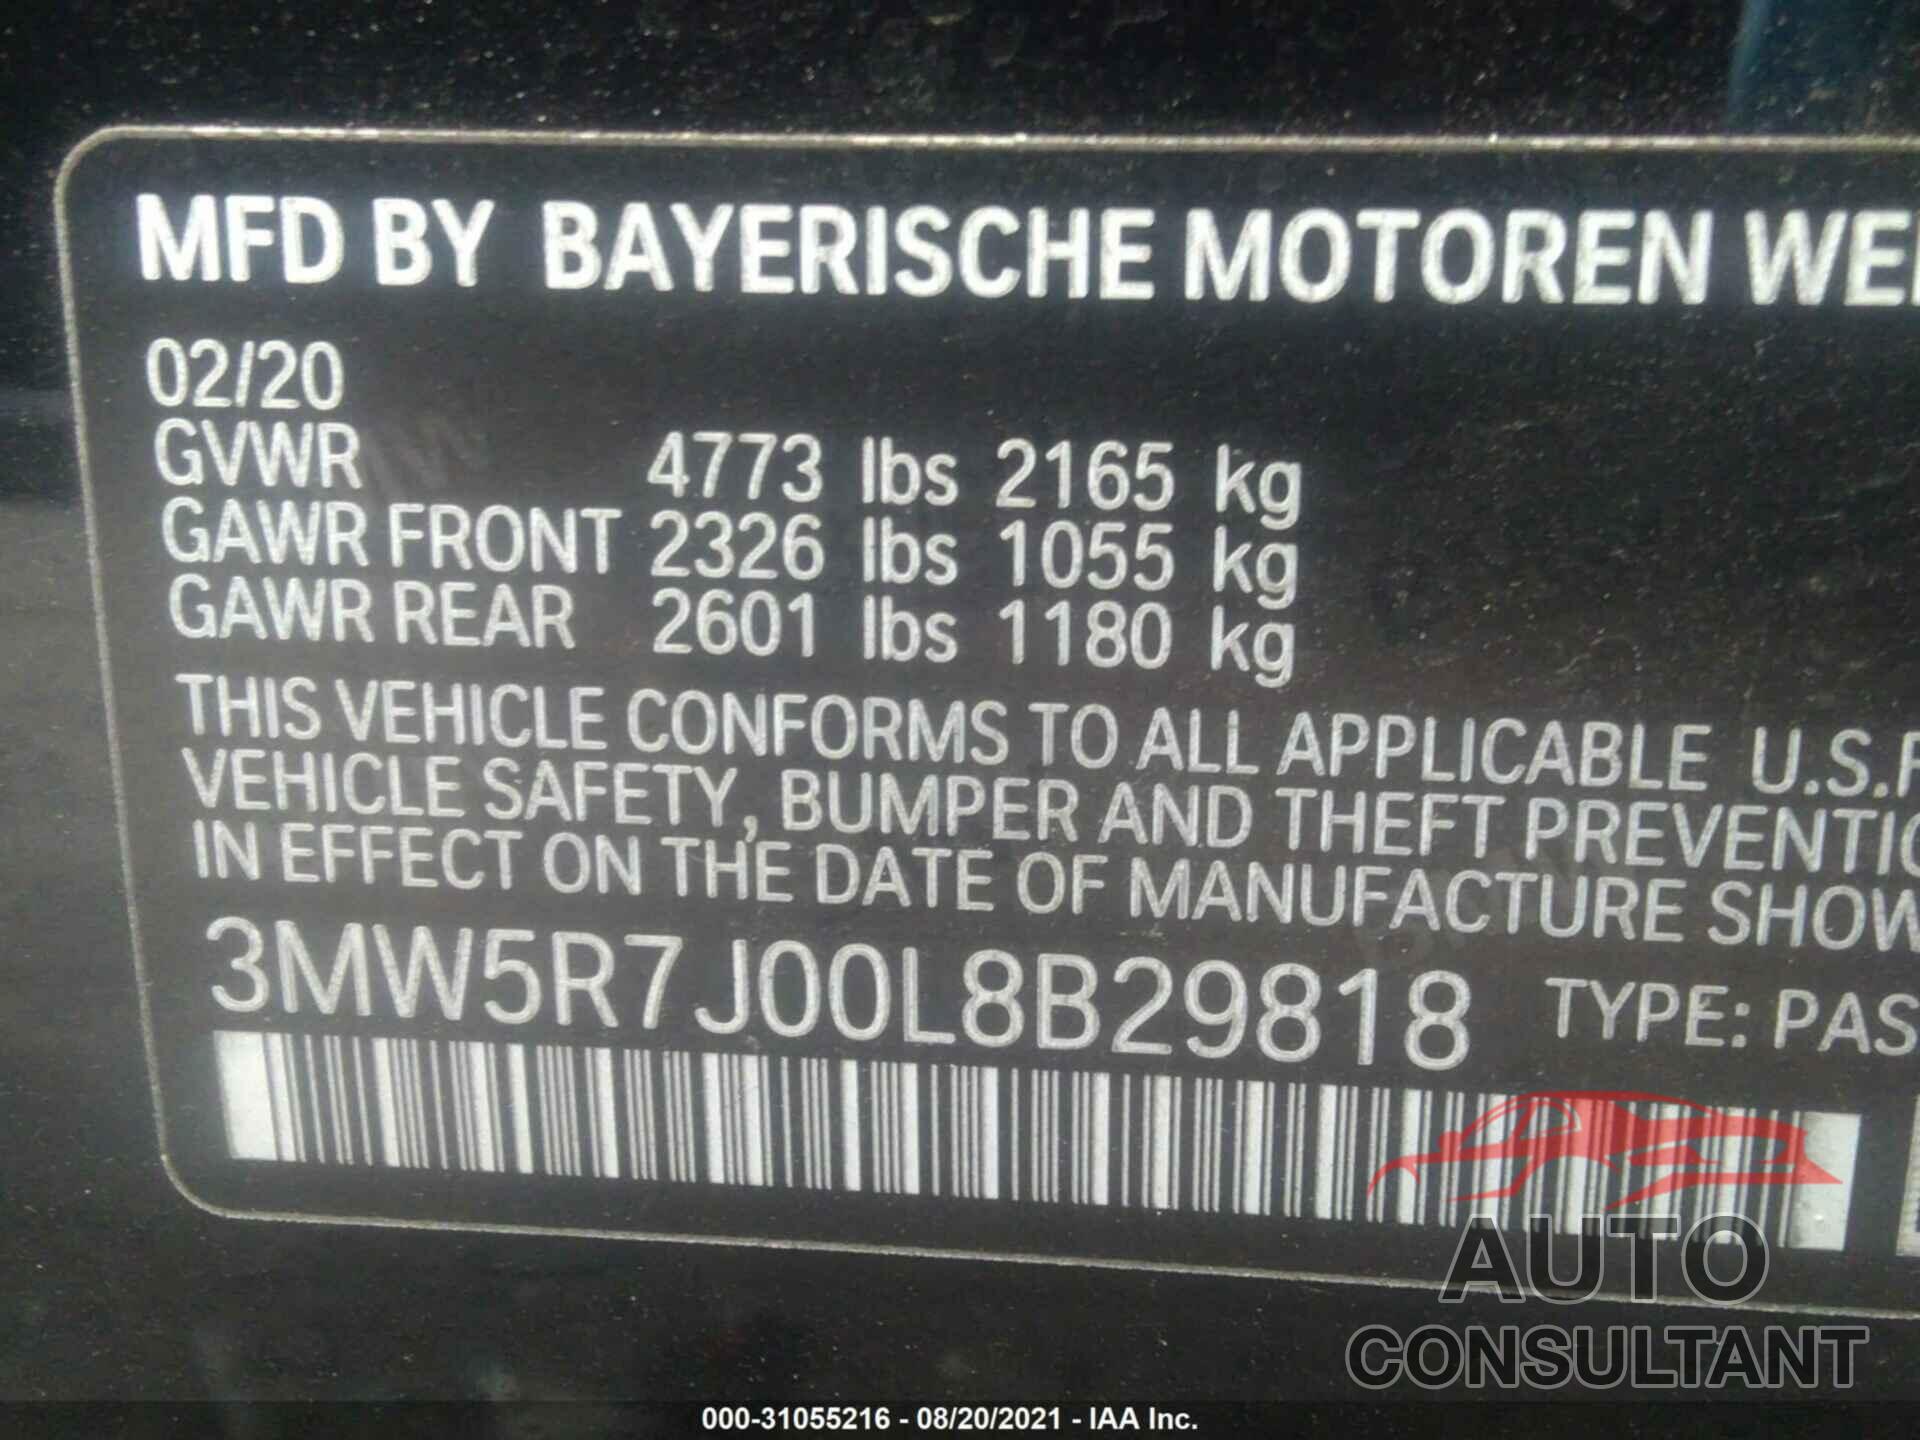 BMW 3 SERIES 2020 - 3MW5R7J00L8B29818